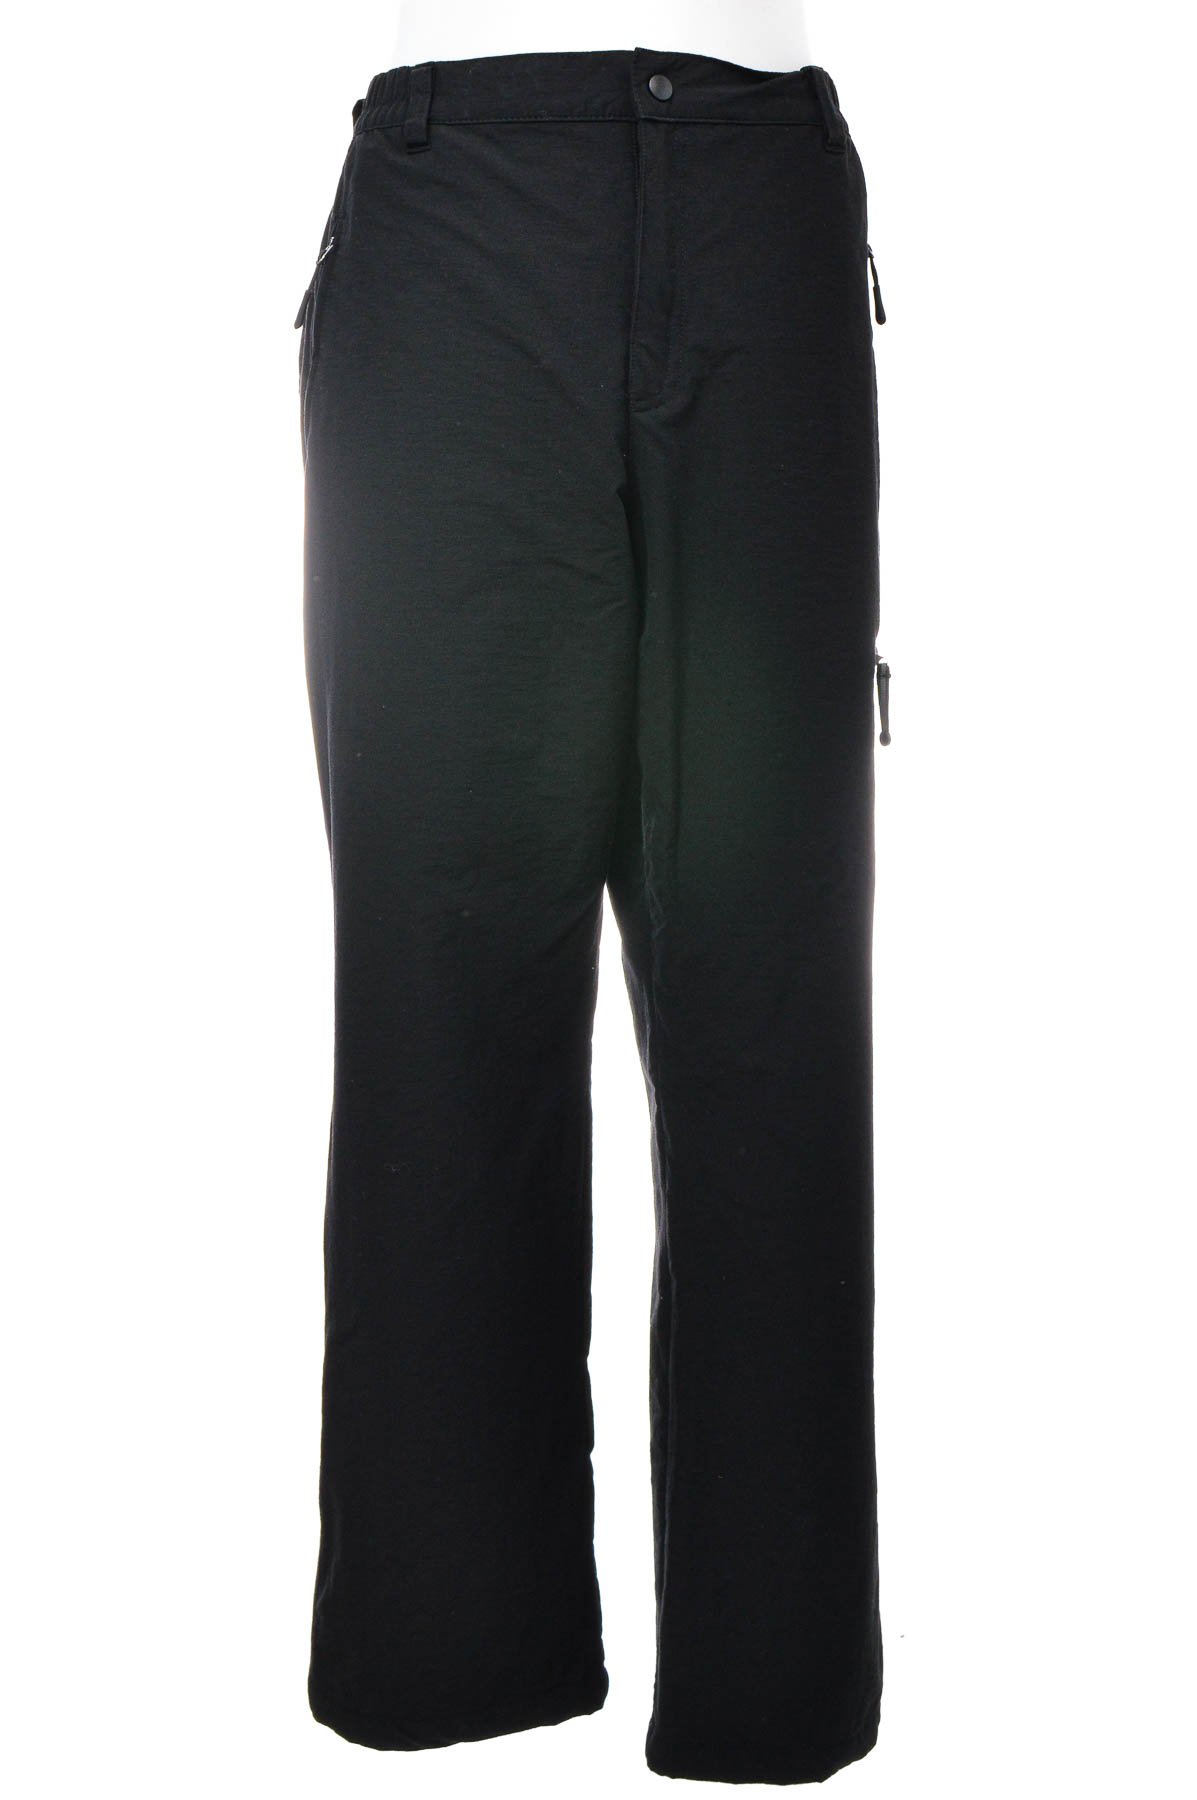 Pantalon pentru bărbați - H52H - 0